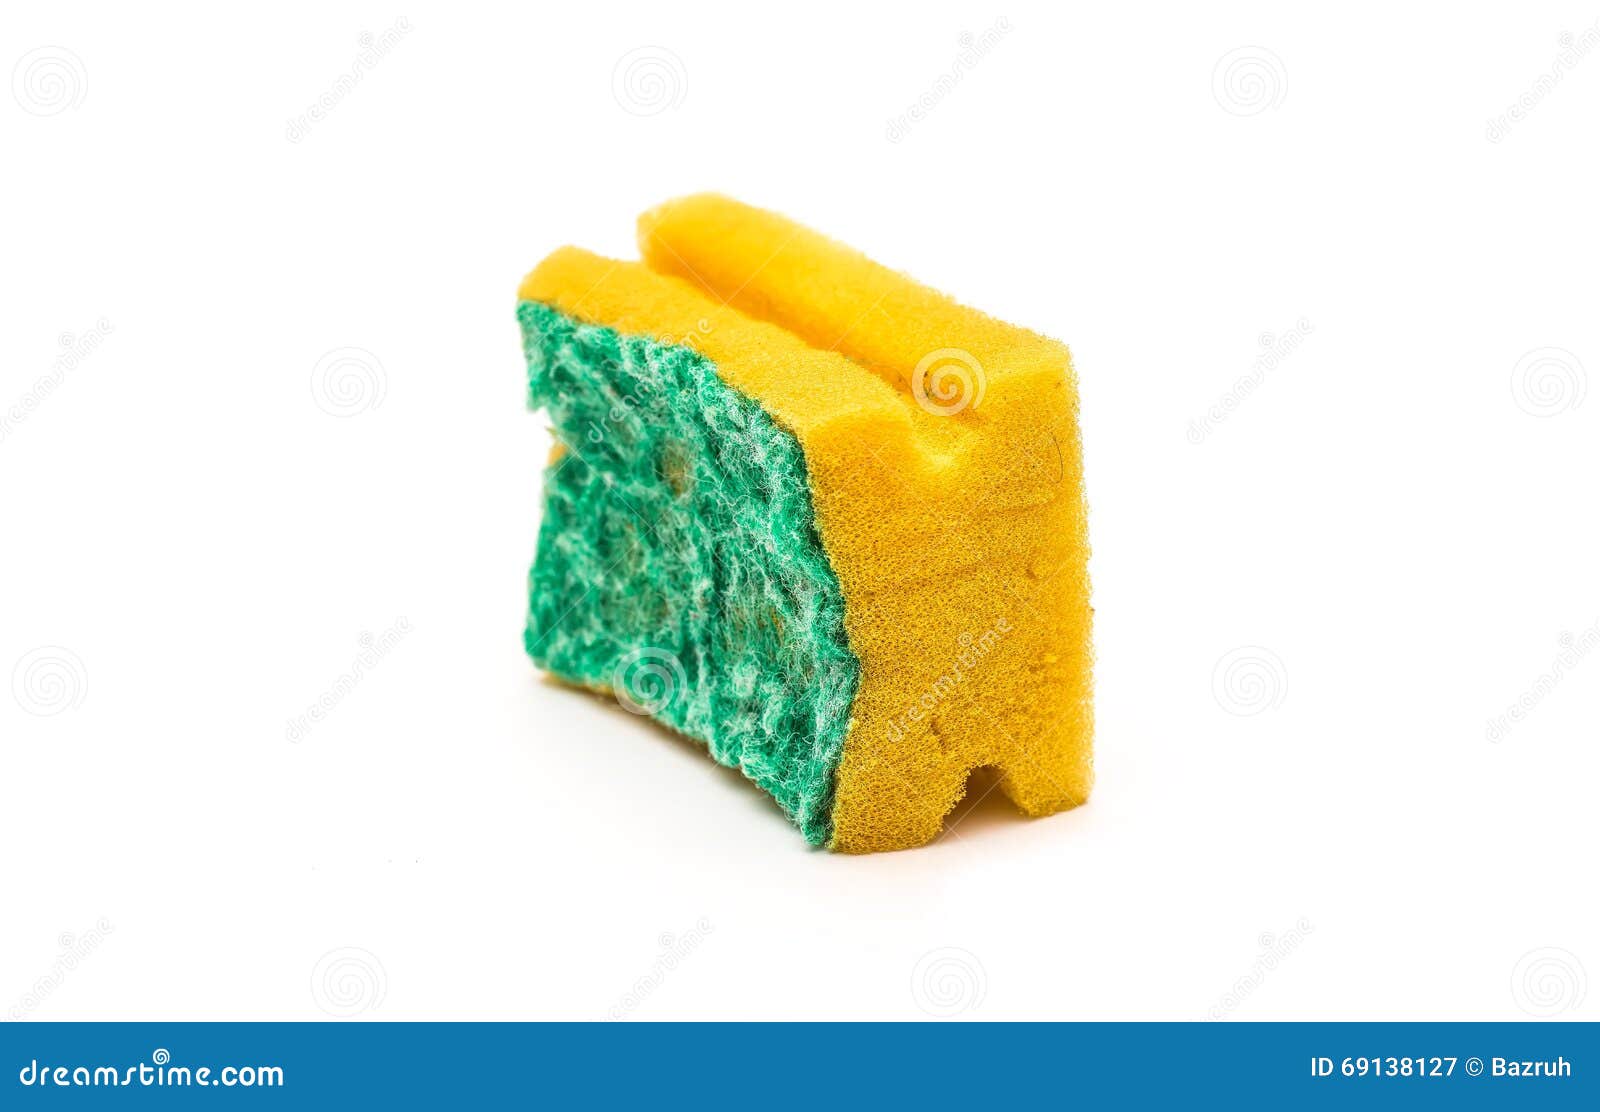 Used sponge stock image. Image of bathroom, sanitation ...